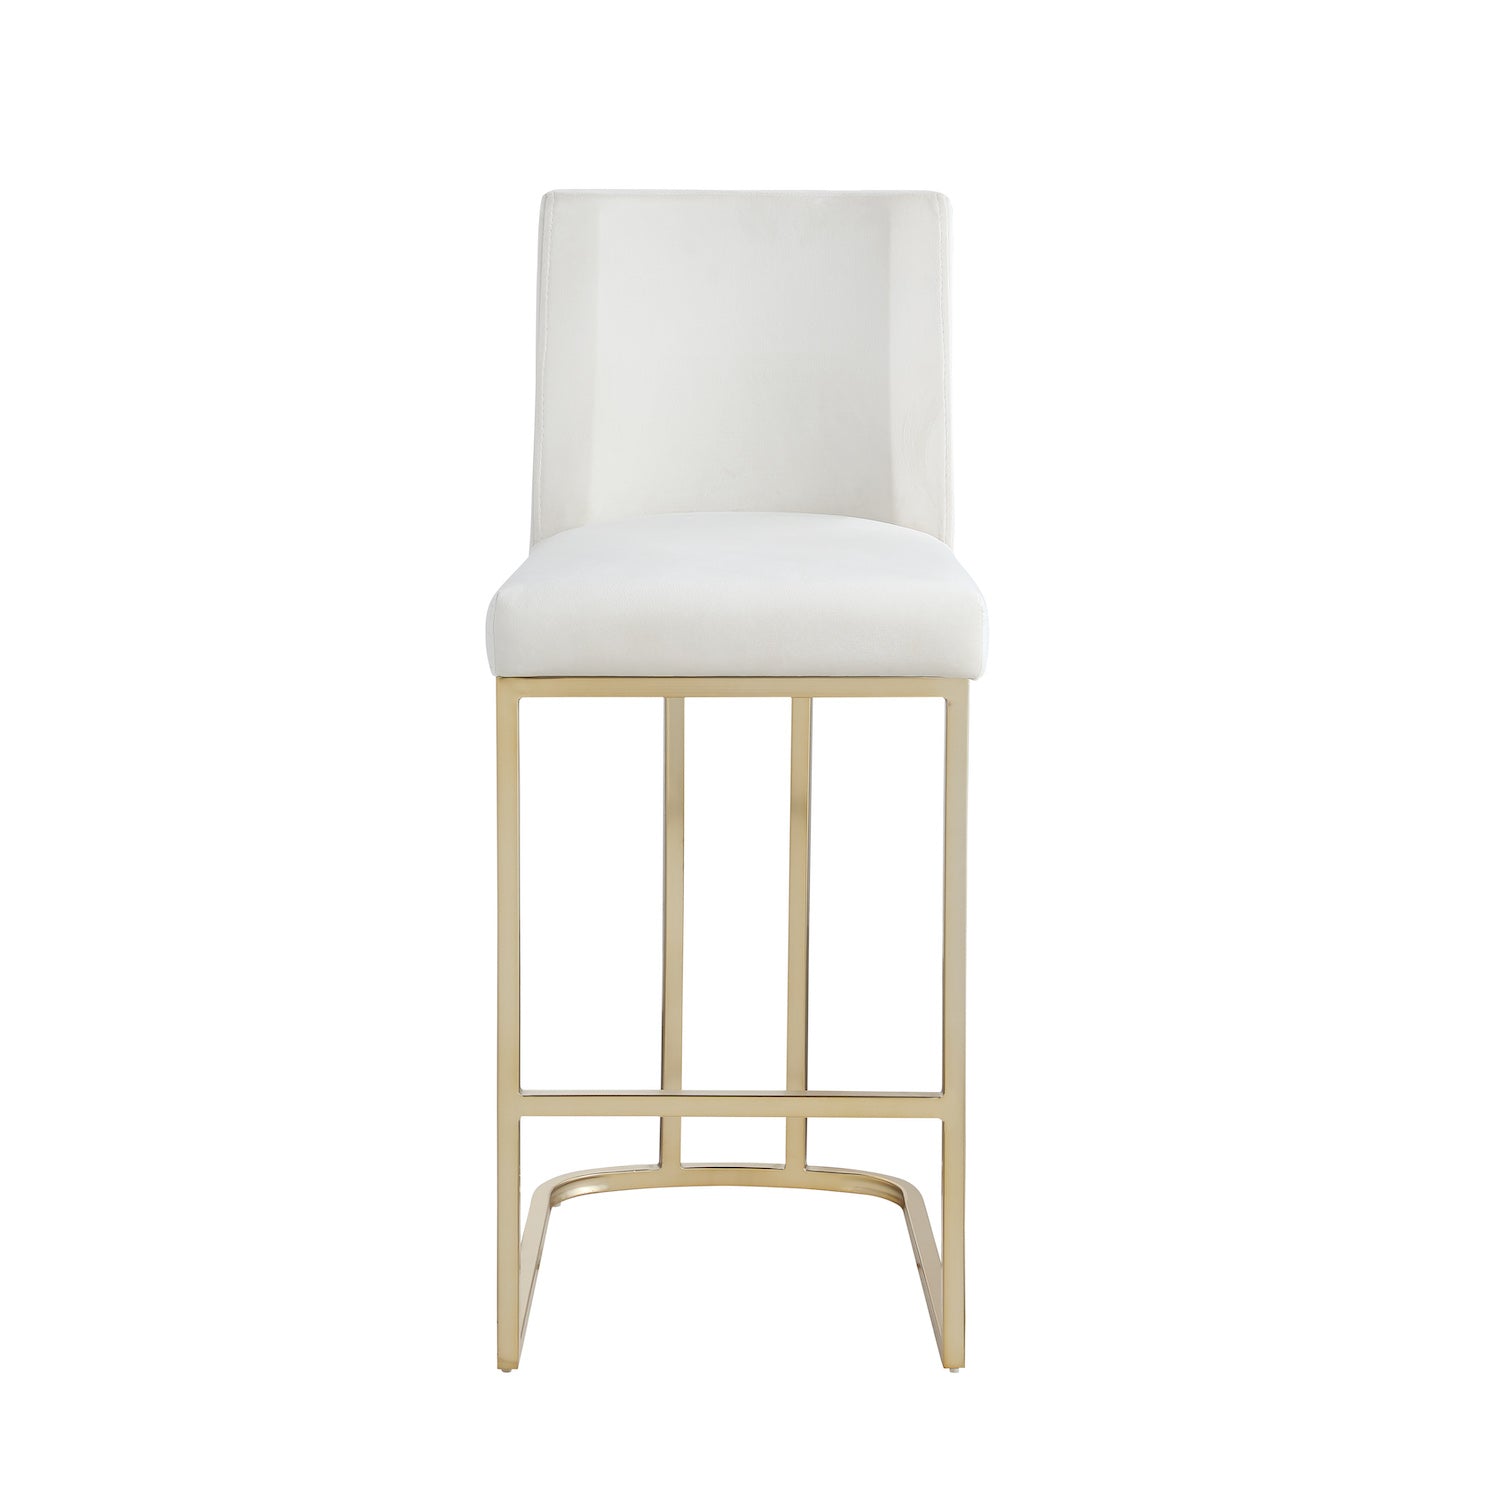 Woker Furniture Velvet Counter Height Chairs Set of 2 - White